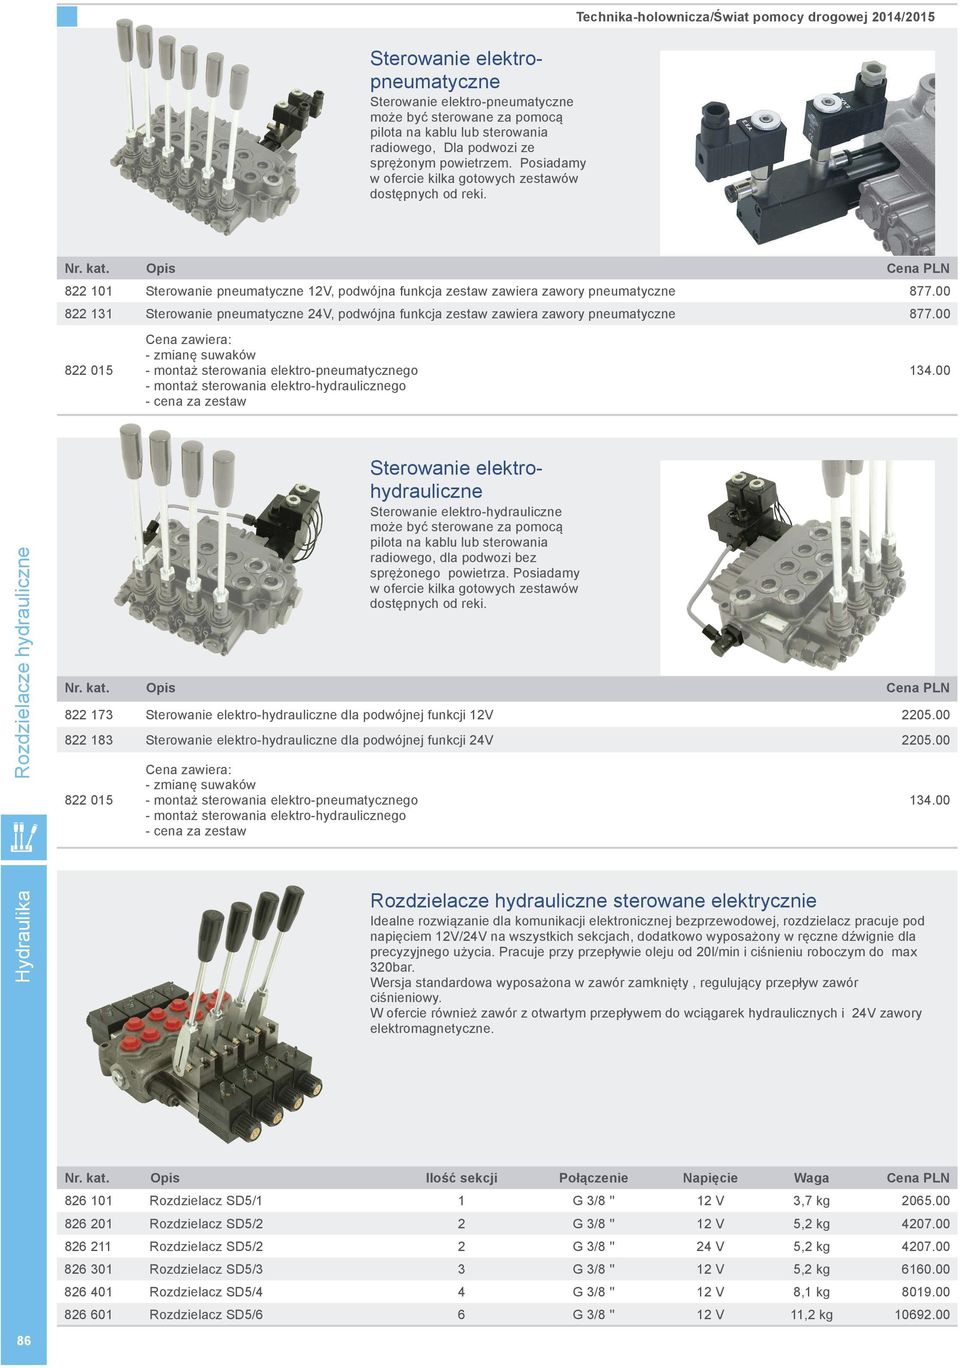 Technika-holownicza/Świat pomocy drogowej 2014/2015 822 101 Sterowanie pneumatyczne 12V, podwójna funkcja zestaw zawiera zawory pneumatyczne 877.